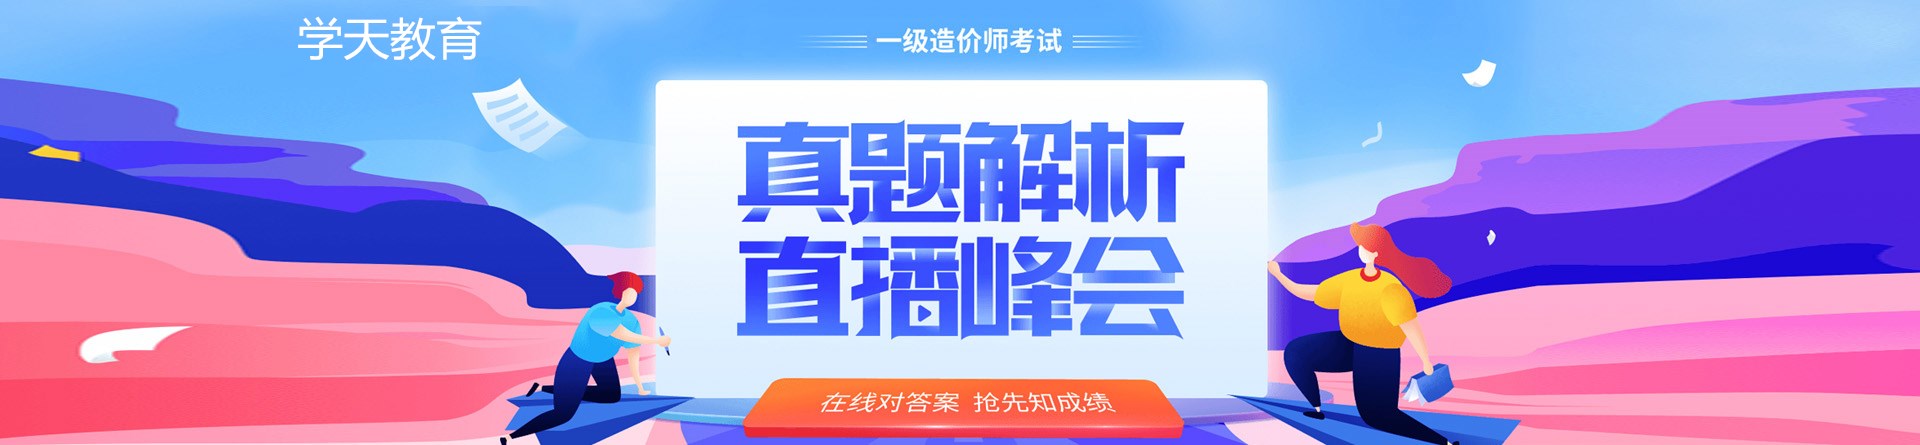 浙江杭州合众学天教育培训